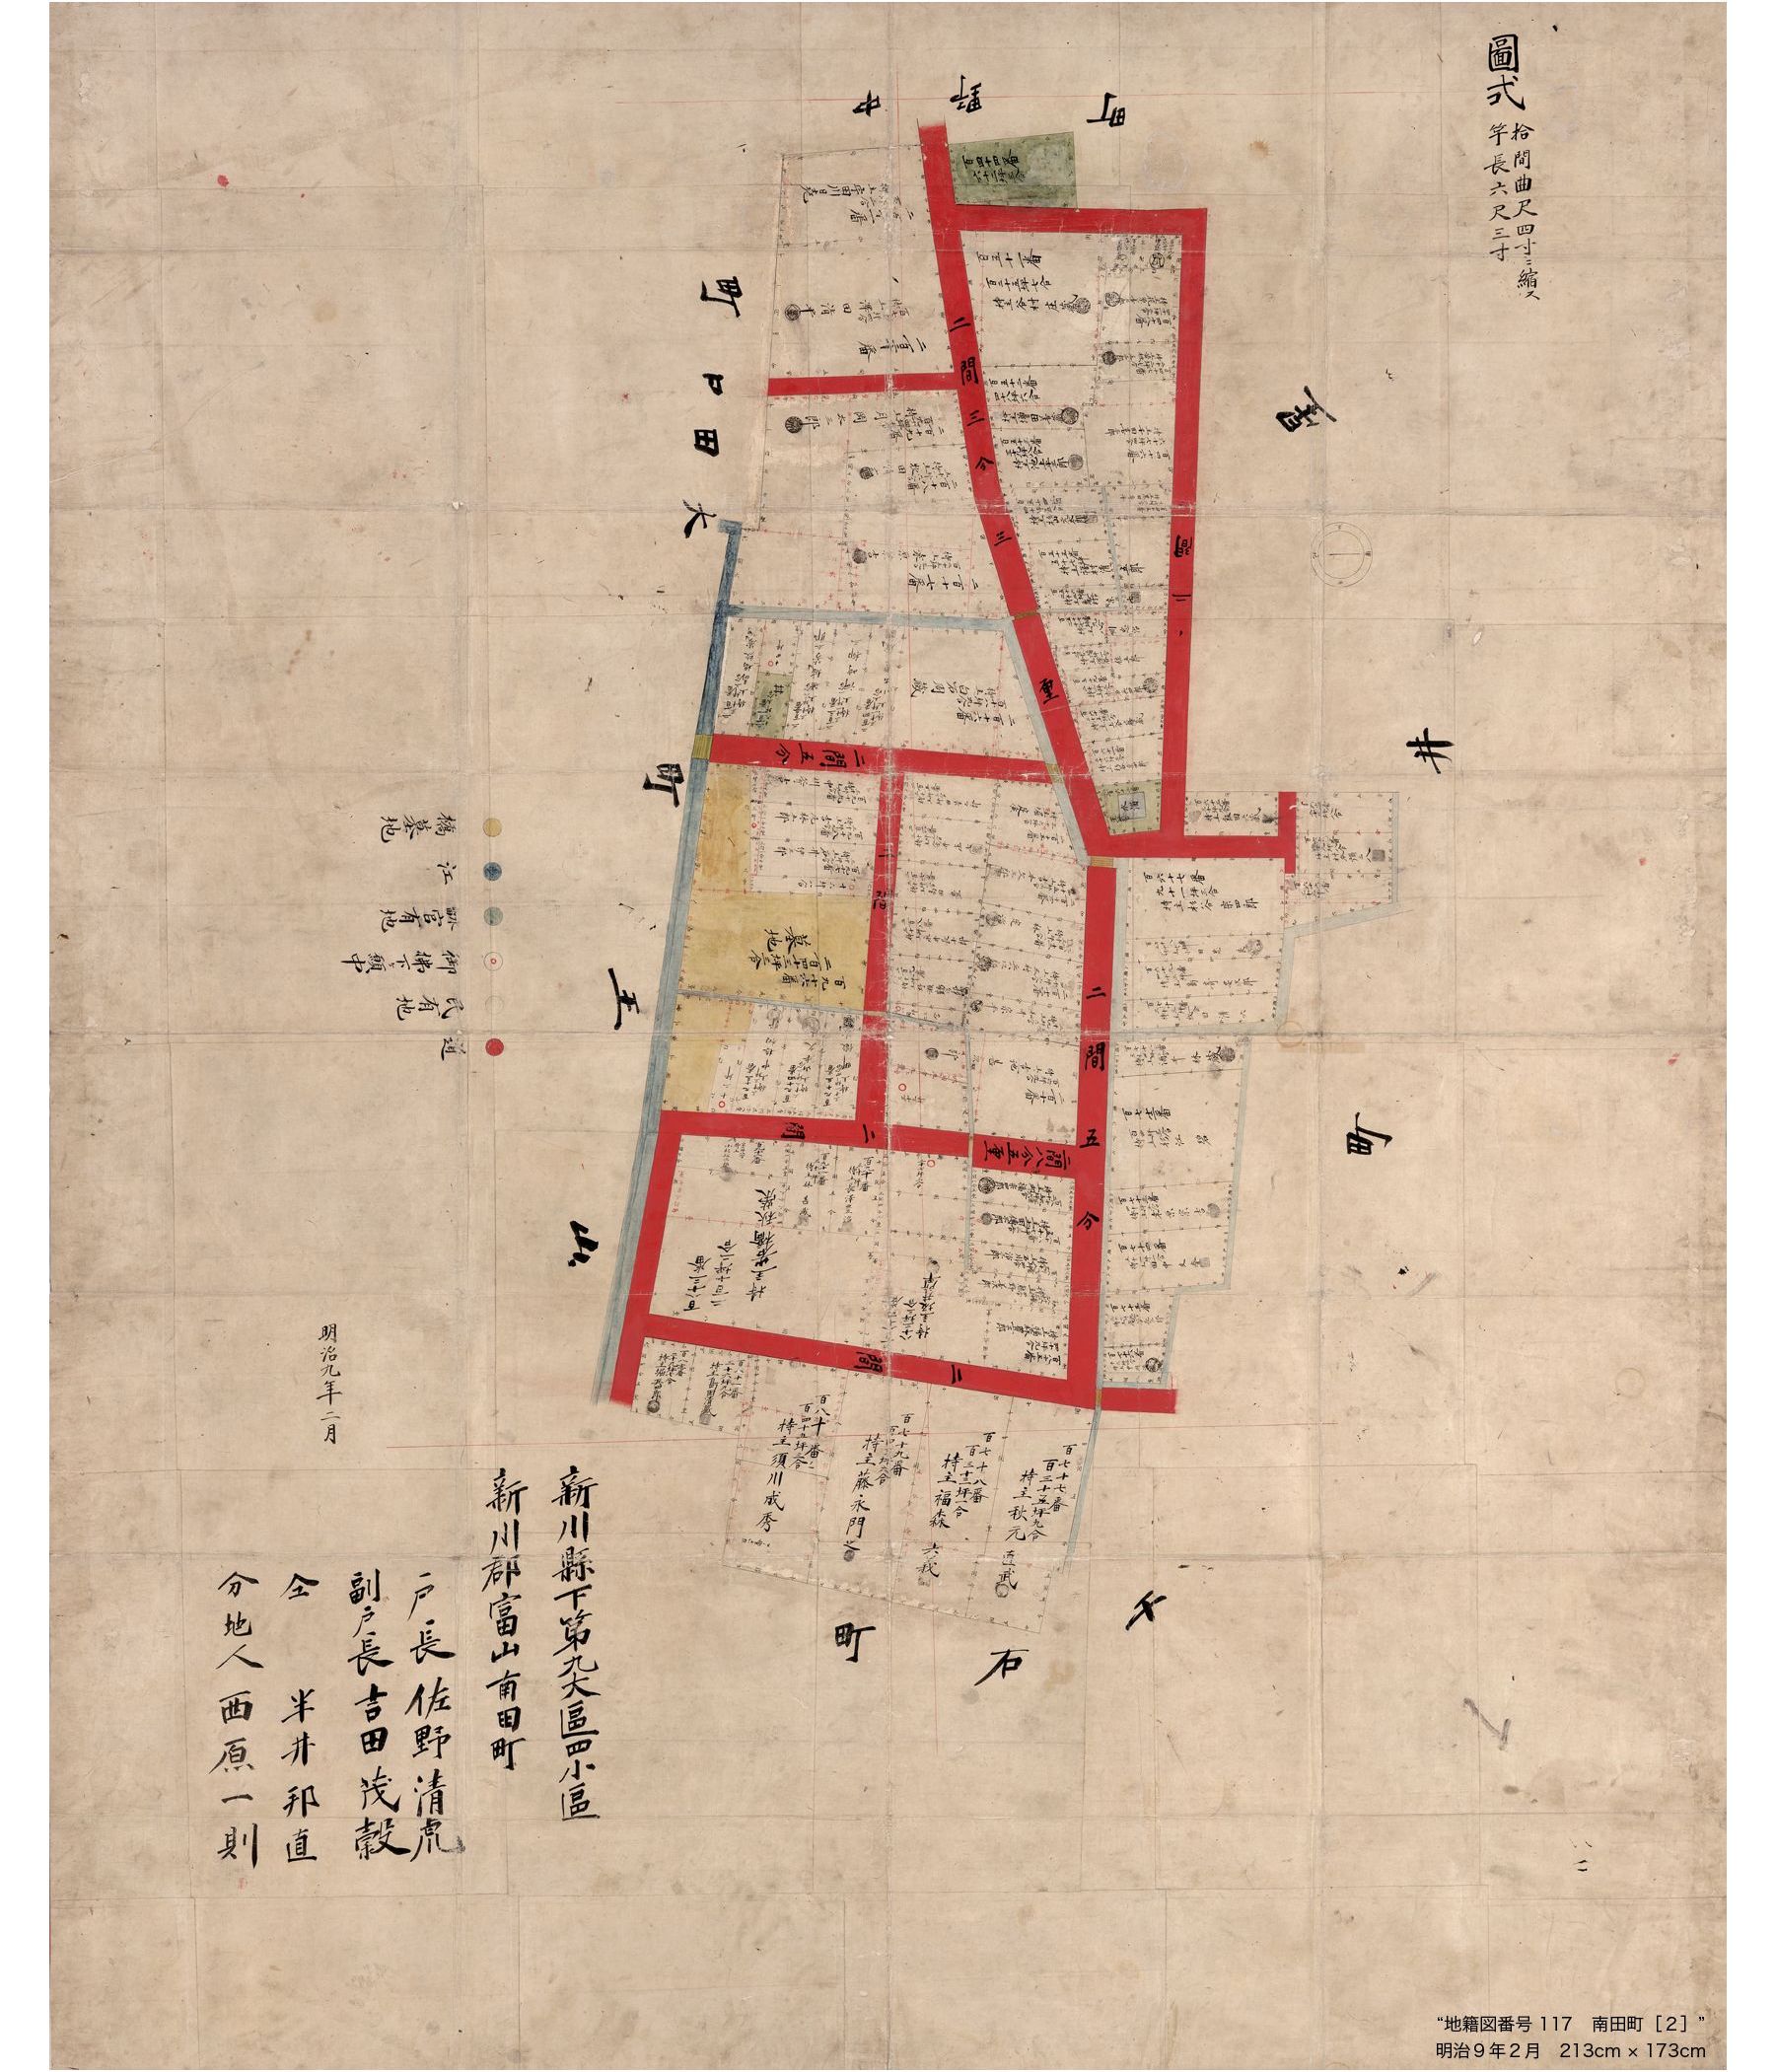 富山市立図書館 古地図詳細画面